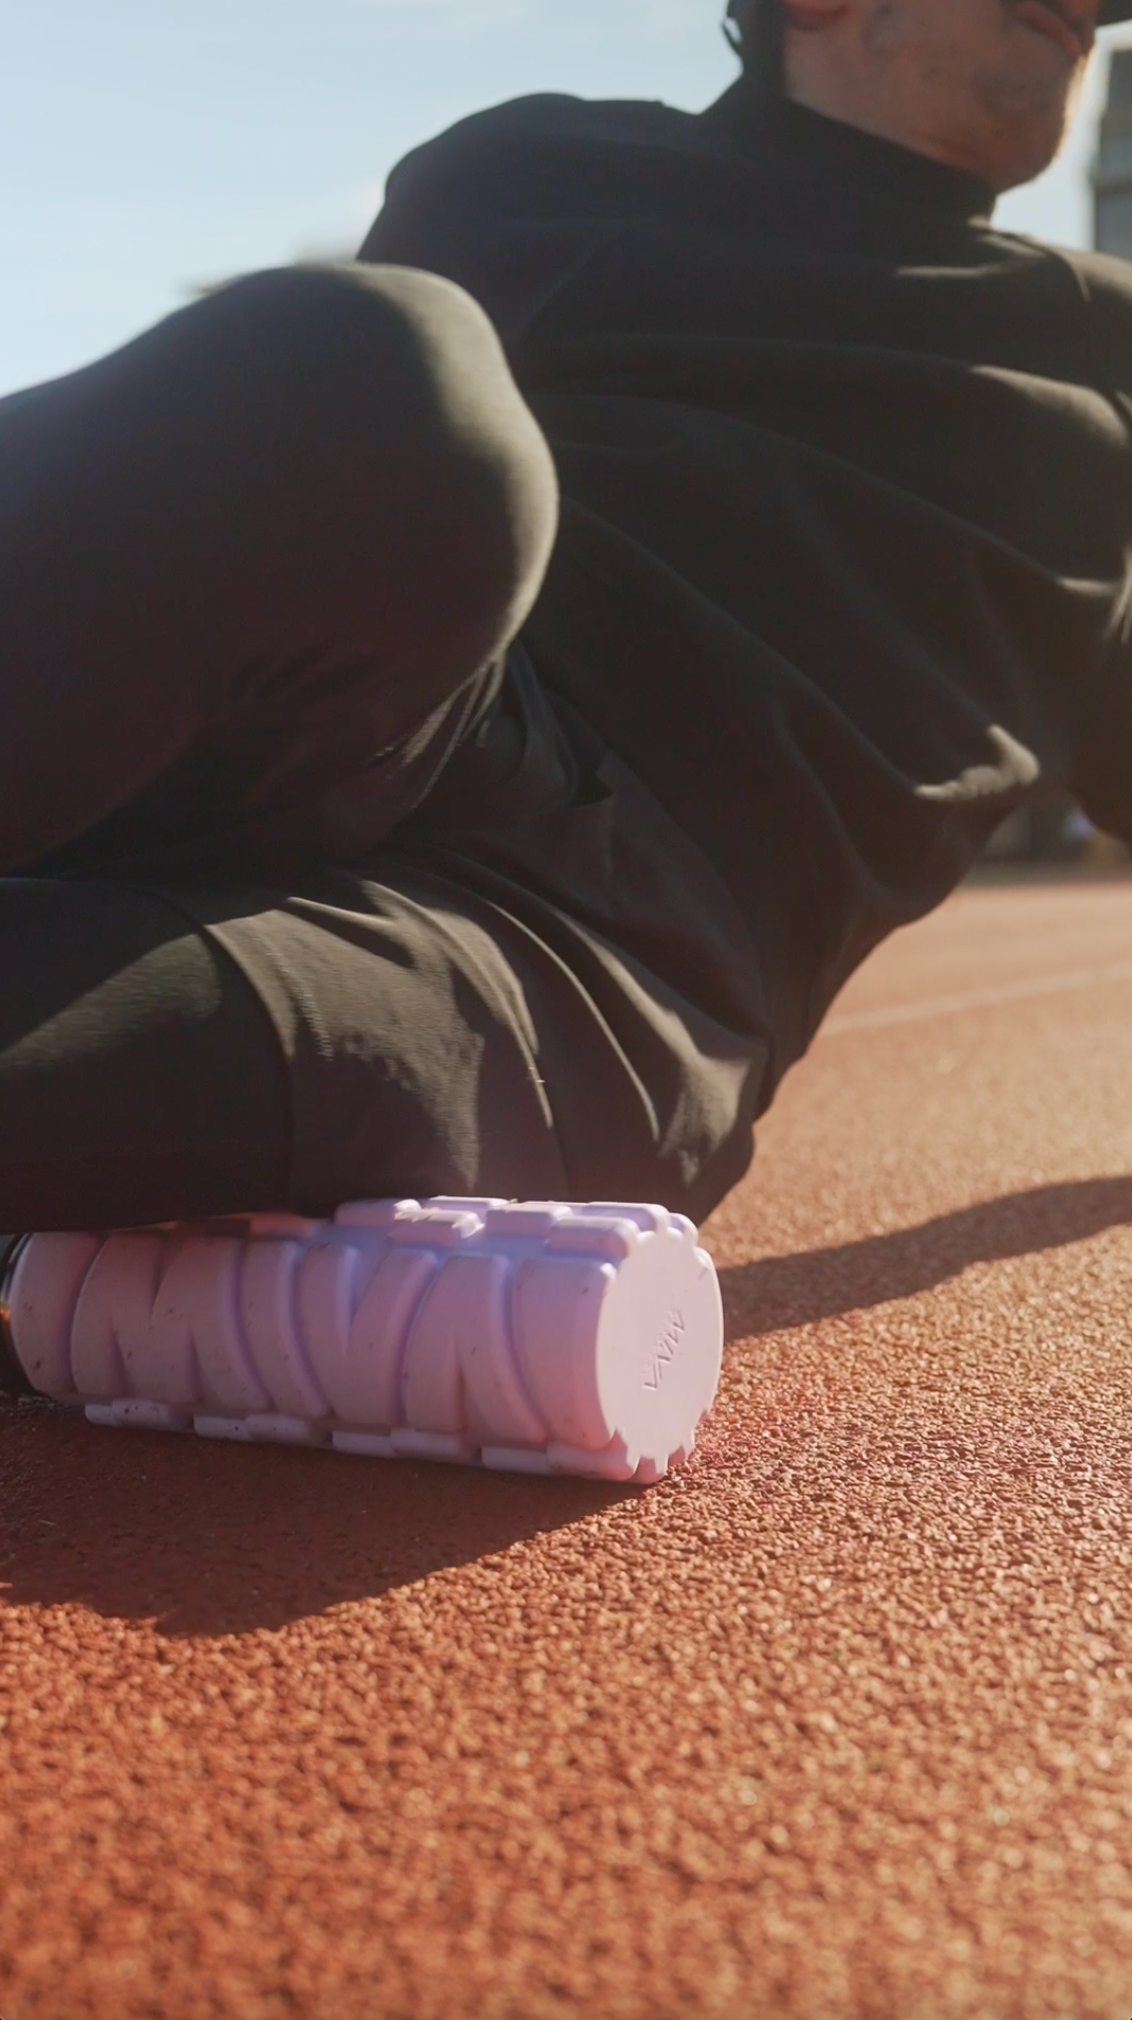 Model on a track Lavender Haze 25 oz MIVA Recovery Foam Roller Water Bottle